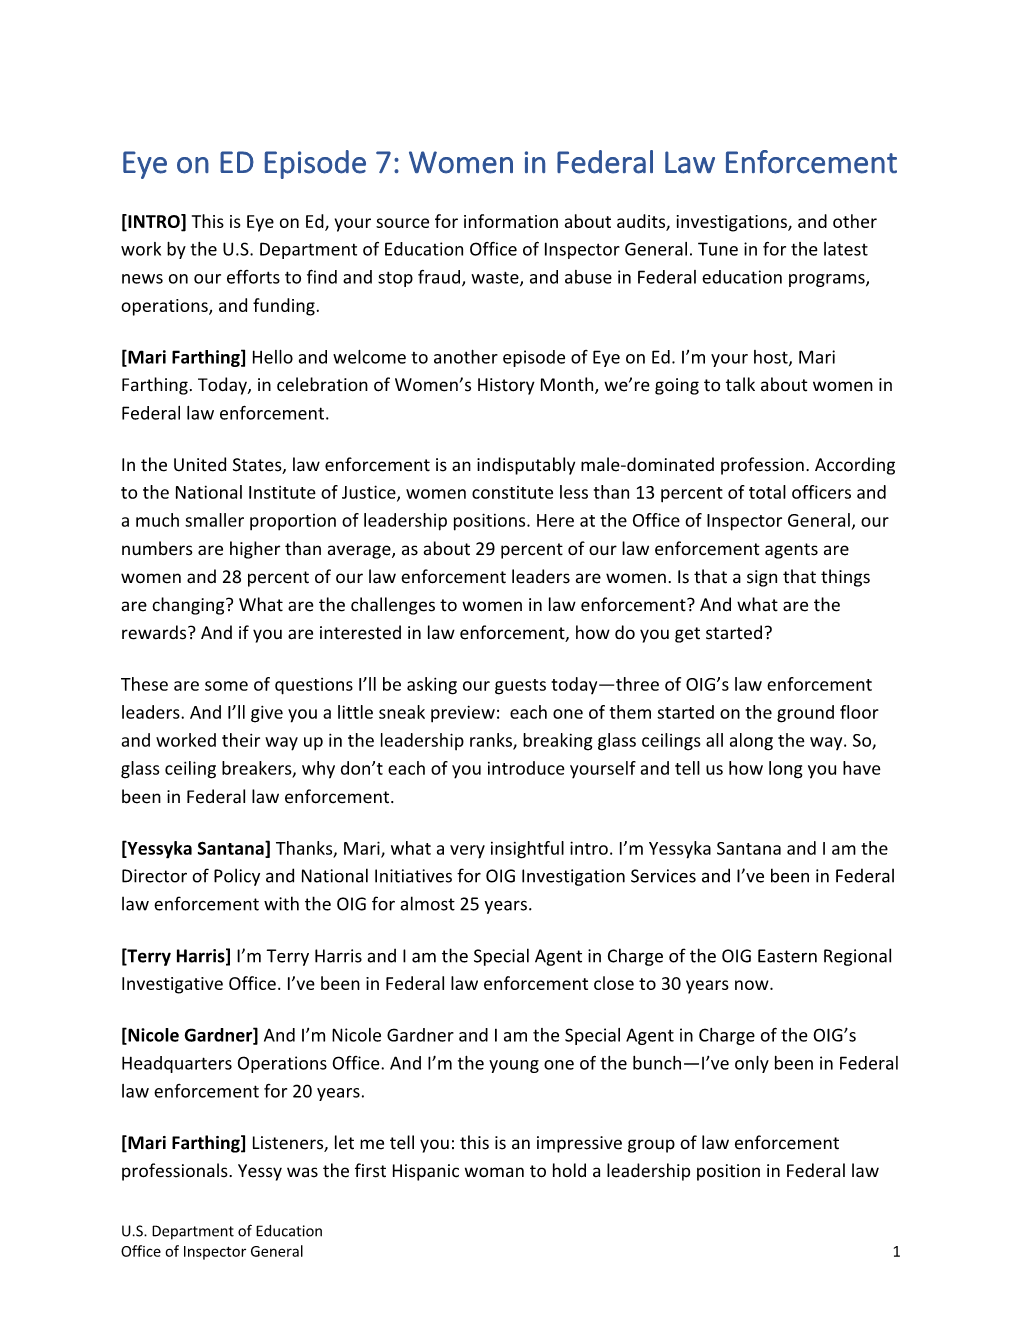 Transcript Eye on ED Episode 7: Women in Federal Law Enforcement